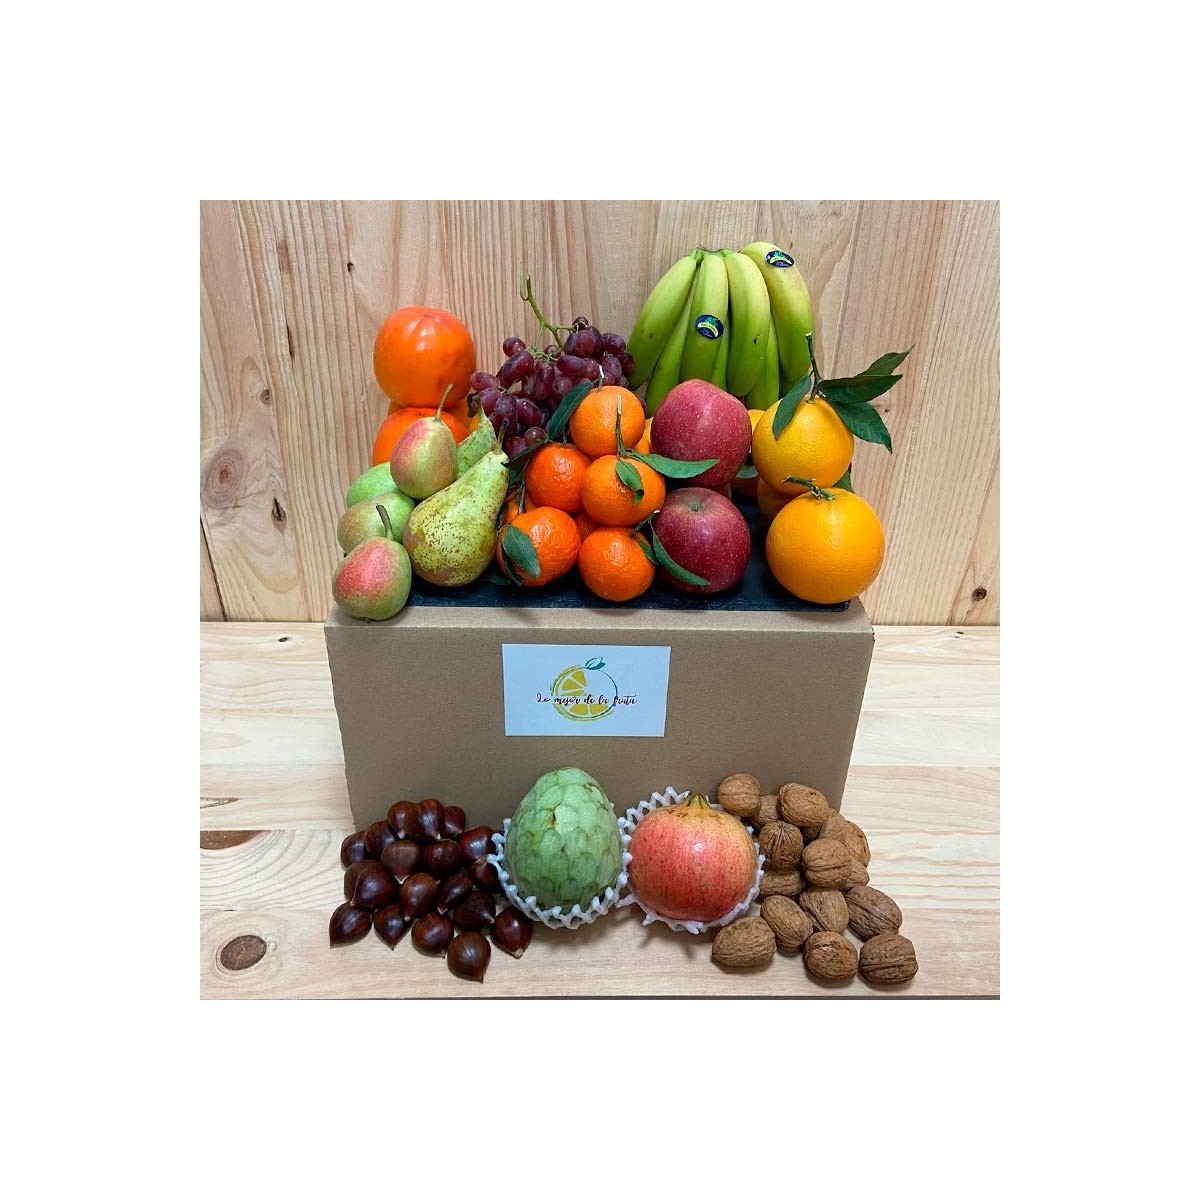 Pack Frutas Diciembre - Packs Frutas y Verduras -1- Lo mejor de la fruta